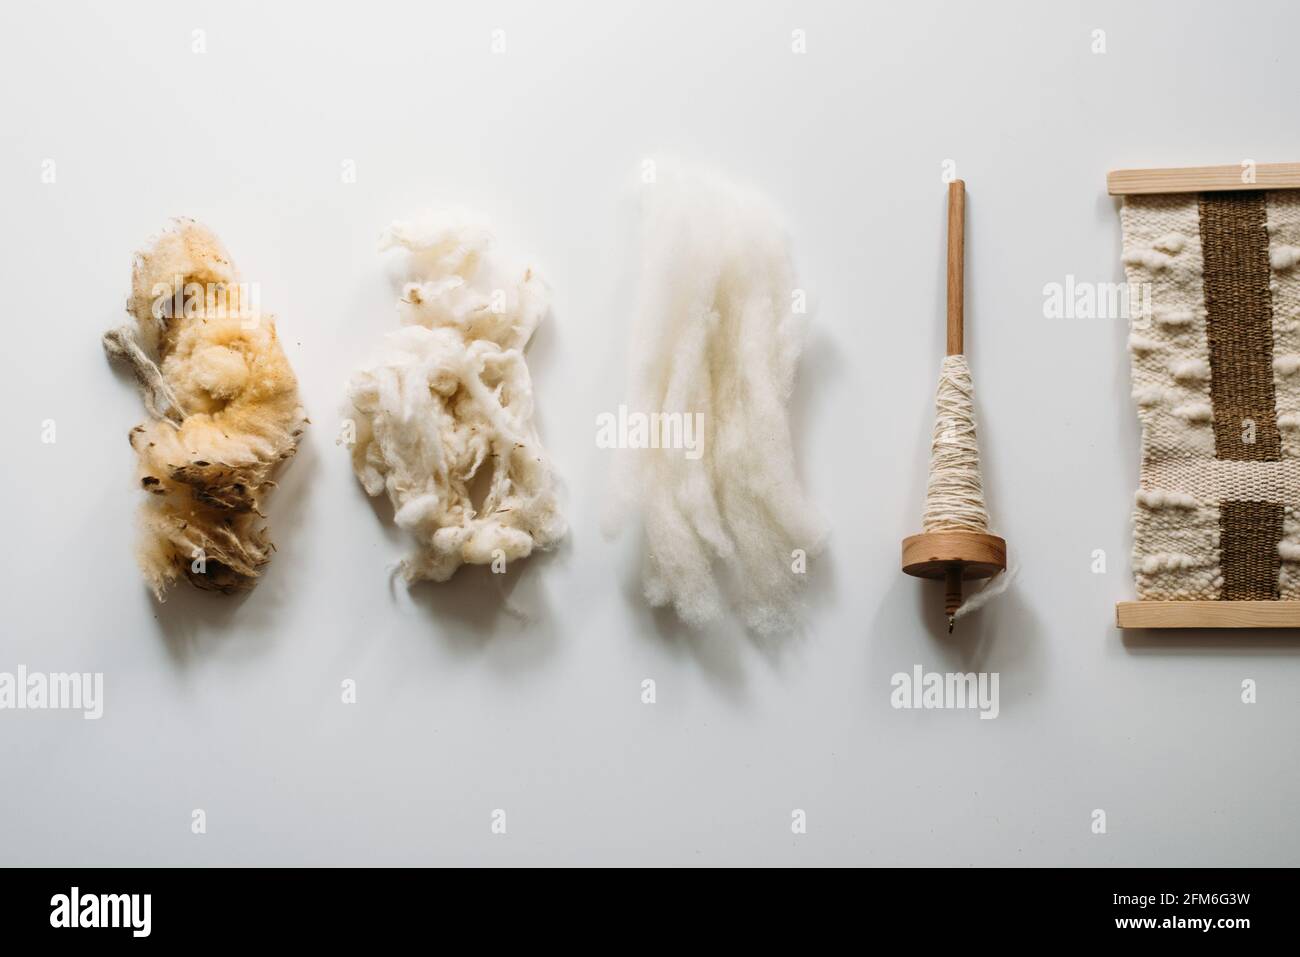 Fünf Stufen: Rohwolle, gewaschene Wolle, gekämmte Wolle, Garn und Teppich  Stockfotografie - Alamy